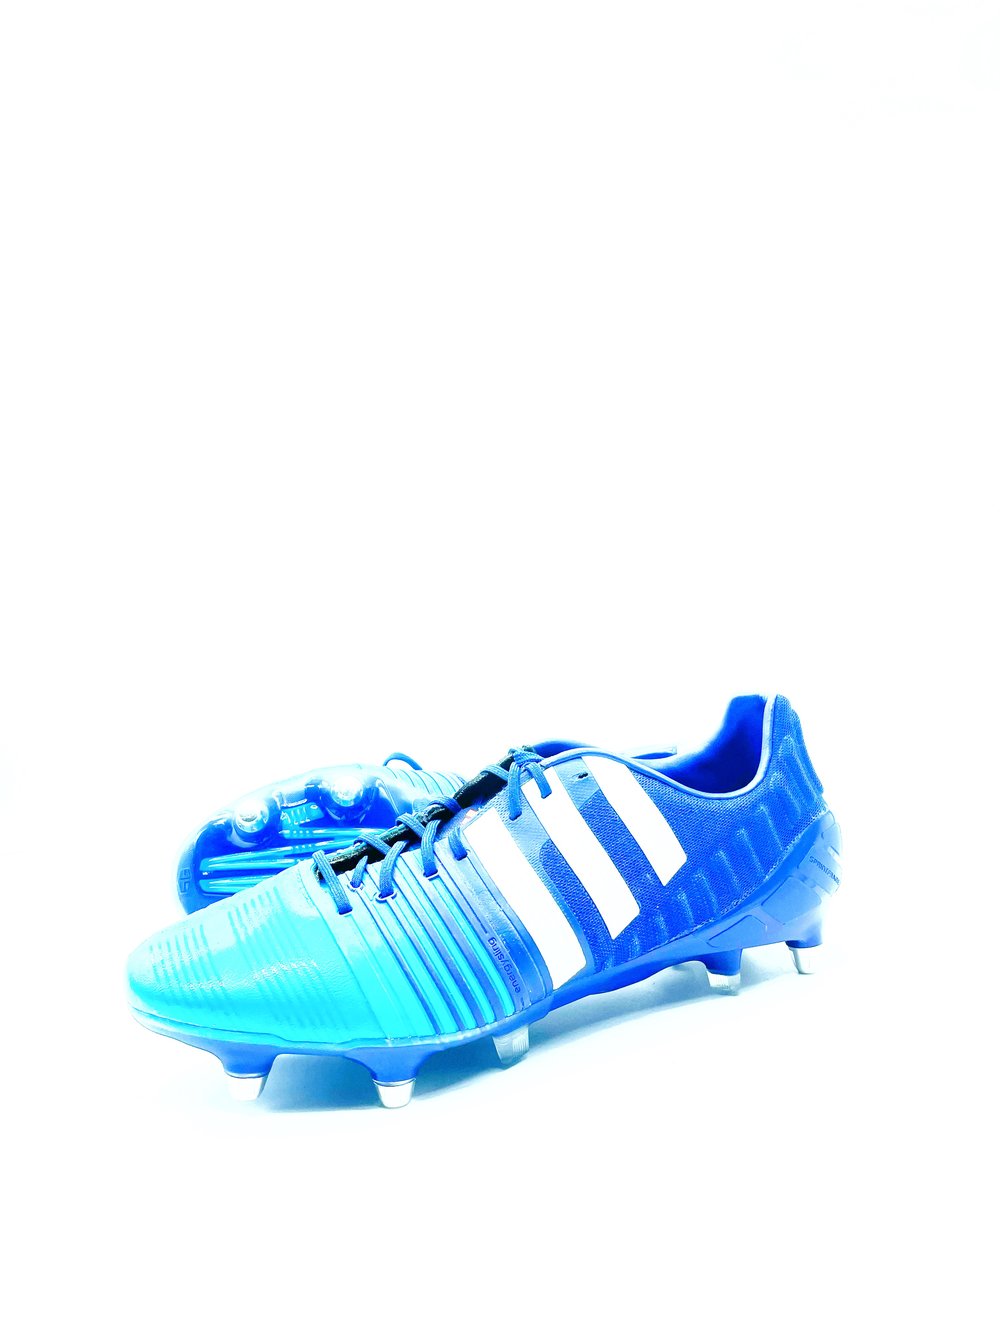 Image of Adidas Nitrocharge blue 1.0 SG 